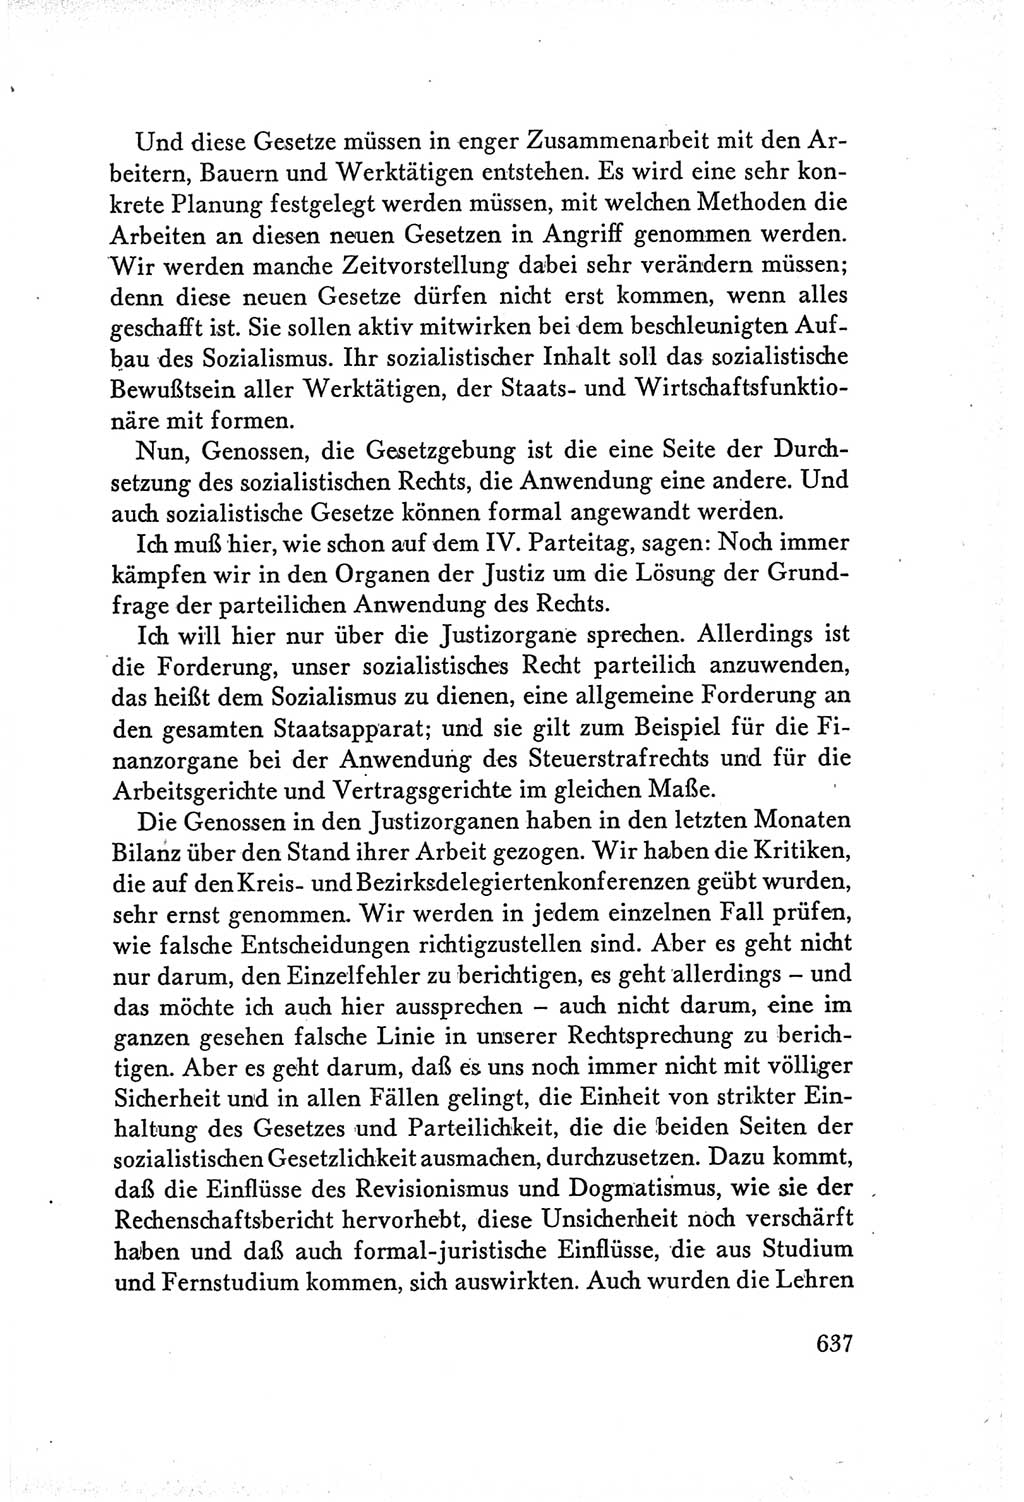 Protokoll der Verhandlungen des Ⅴ. Parteitages der Sozialistischen Einheitspartei Deutschlands (SED) [Deutsche Demokratische Republik (DDR)] 1958, Seite 637